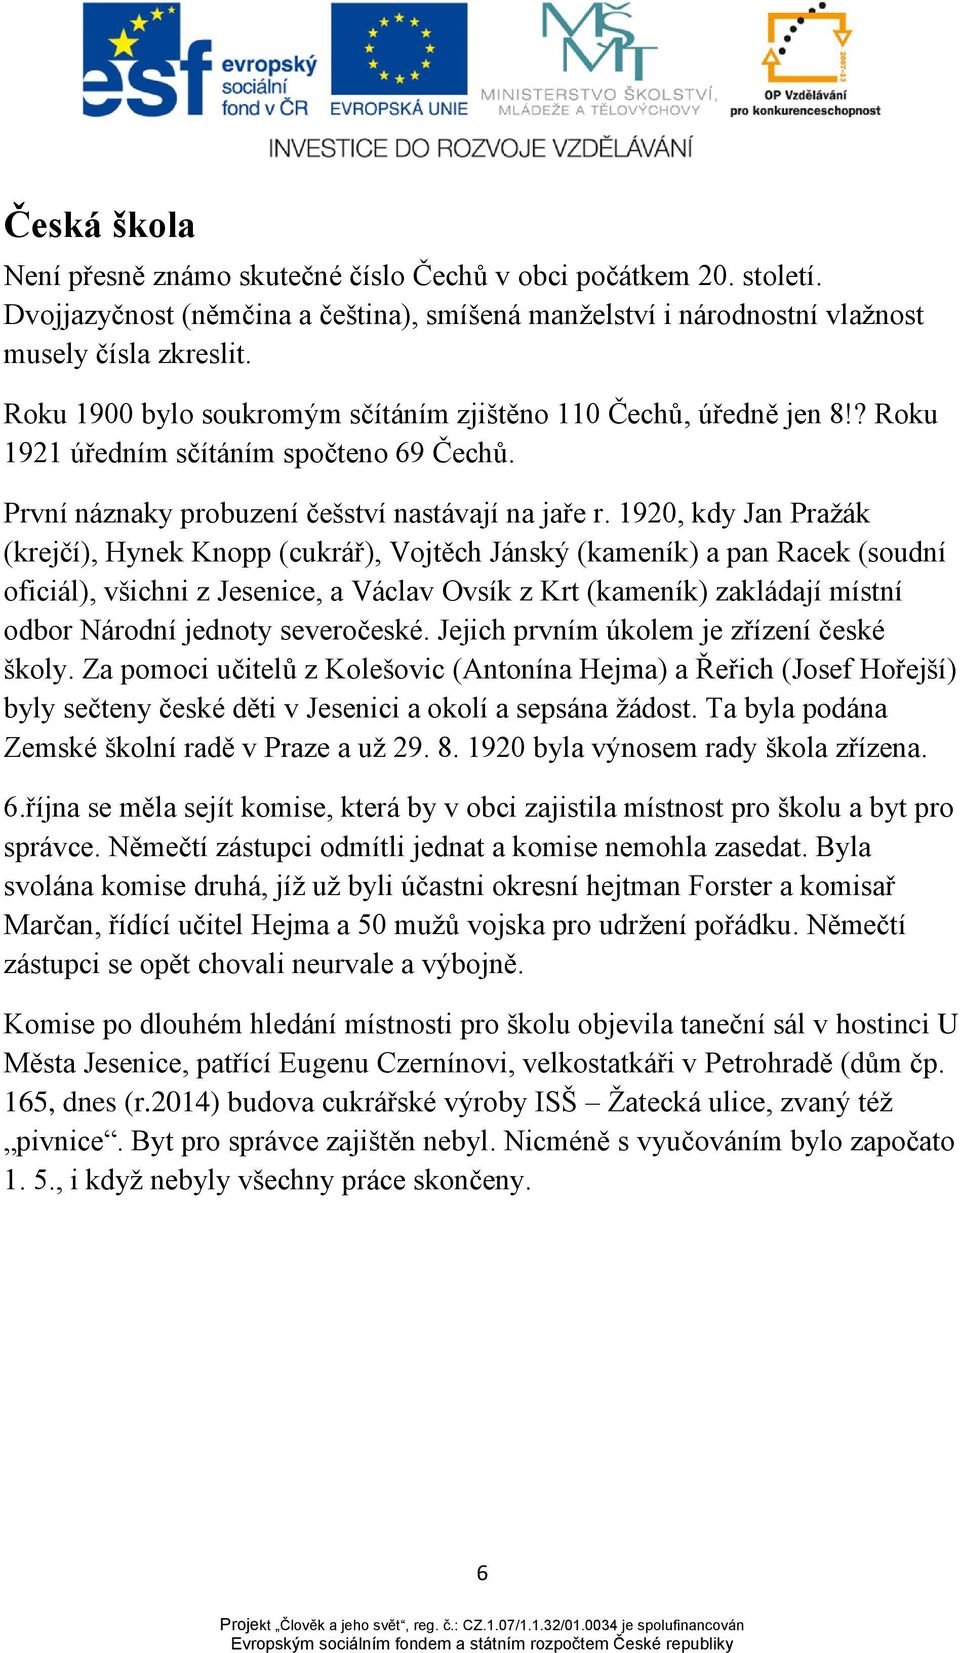 1920, kdy Jan Pražák (krejčí), Hynek Knopp (cukrář), Vojtěch Jánský (kameník) a pan Racek (soudní oficiál), všichni z Jesenice, a Václav Ovsík z Krt (kameník) zakládají místní odbor Národní jednoty